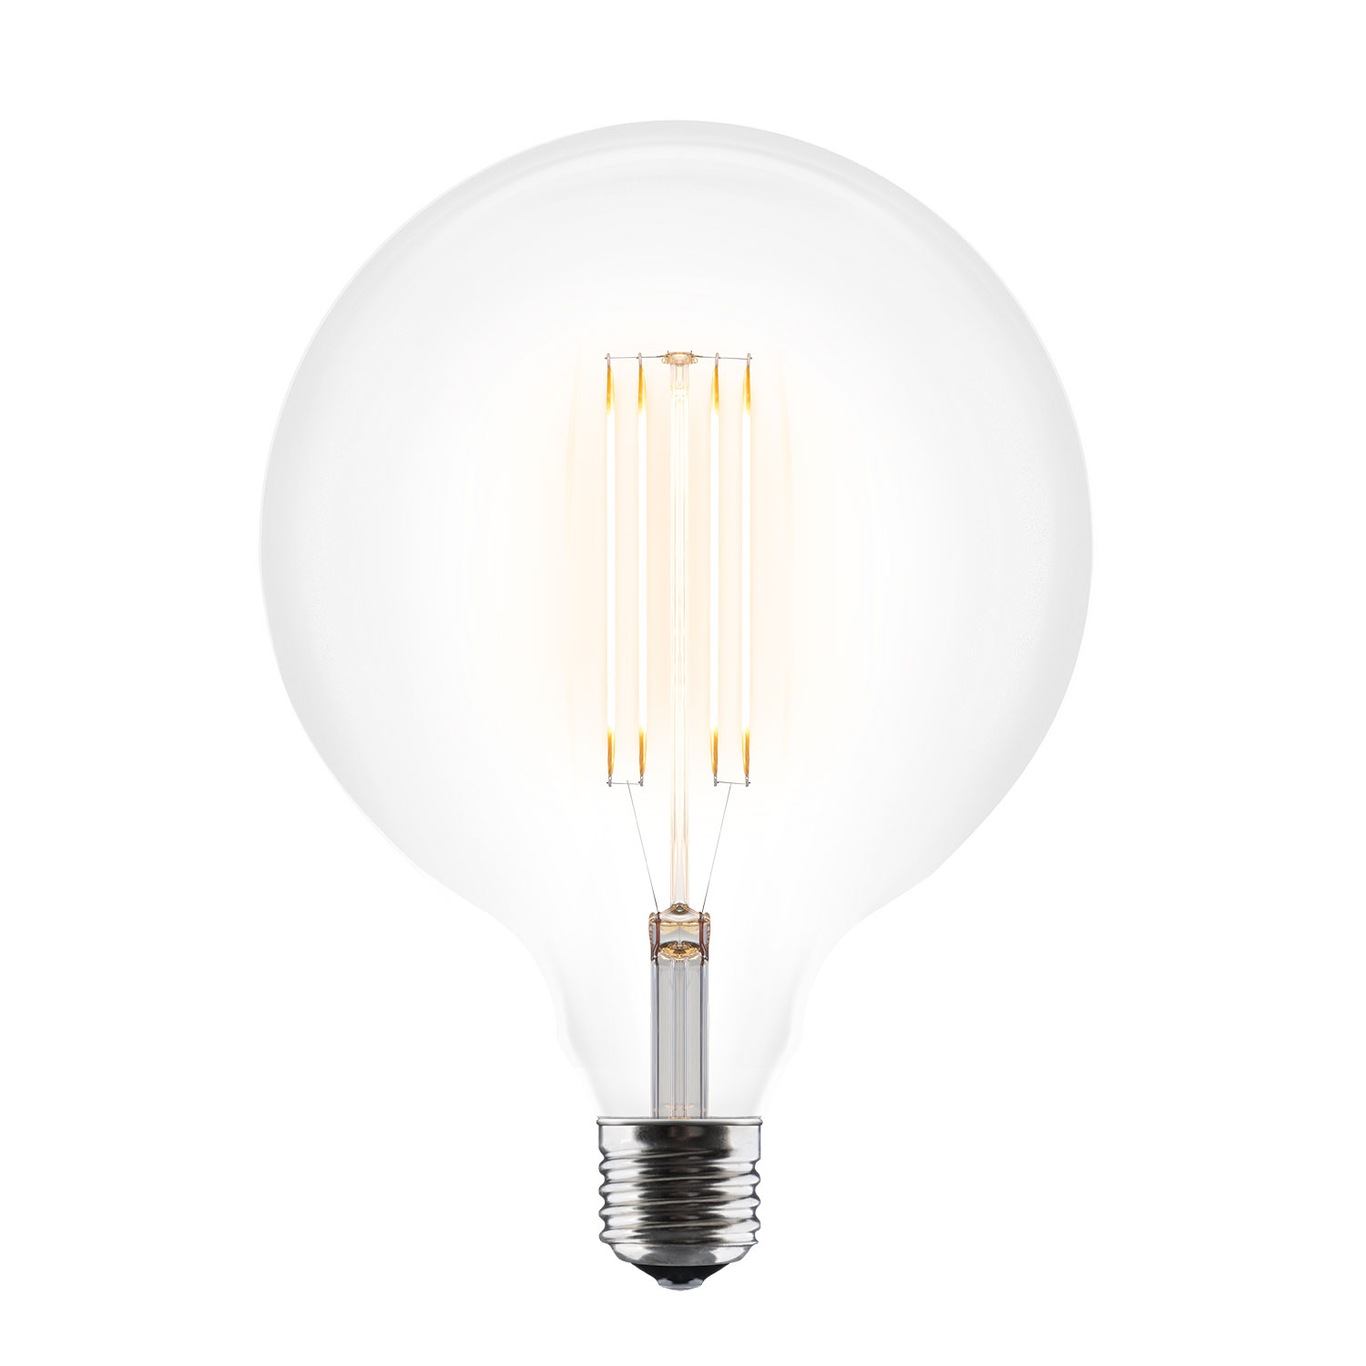 Idea Glühlampe E27 LED 3W